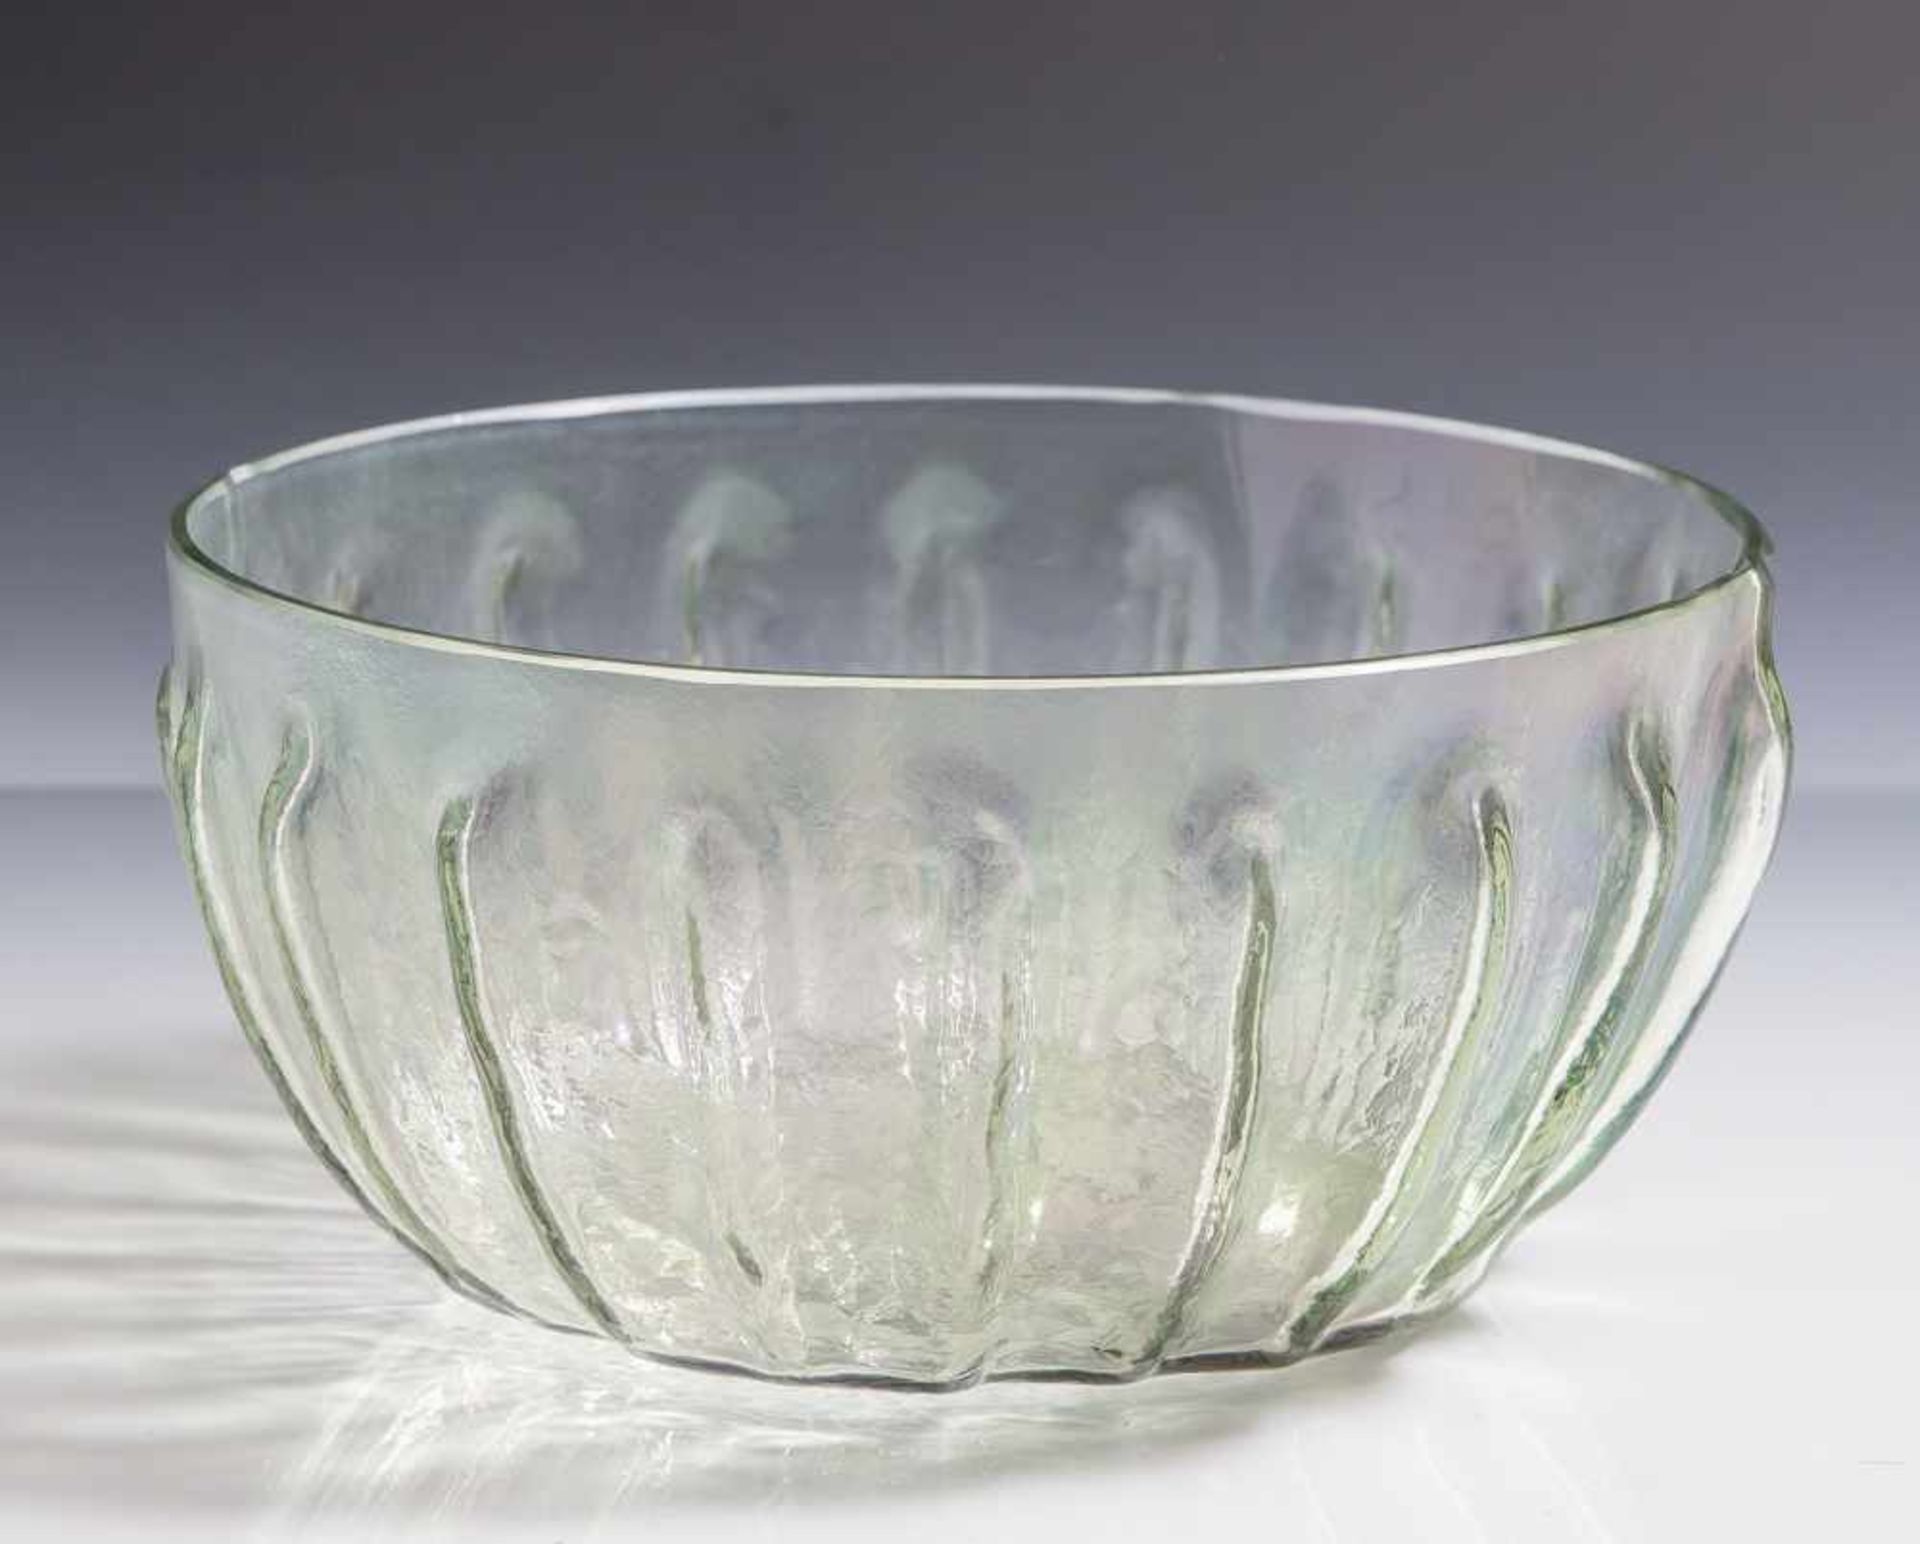 Runde Glasschüssel, wohl um 1900, farbloses Glas, grün irisierende Oberfläche, gerippte